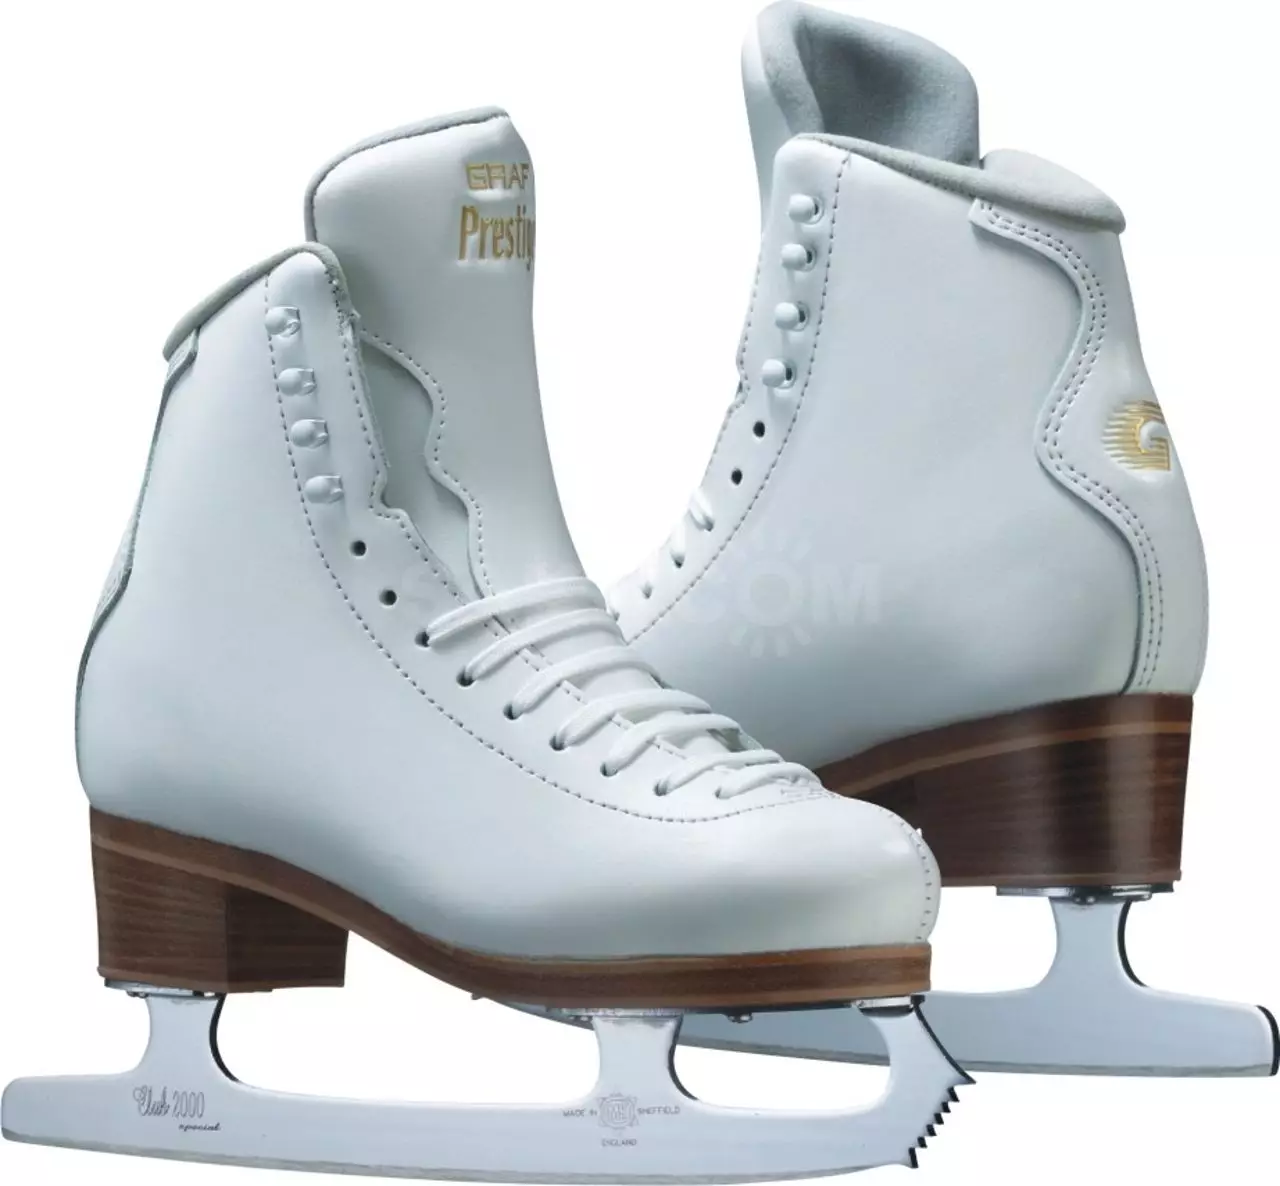 Patins para adultos iniciantes: Quais são os primeiros patins a escolher para um iniciante? O que comprar mulheres e homens? O que é mais fácil de andar? 20206_6